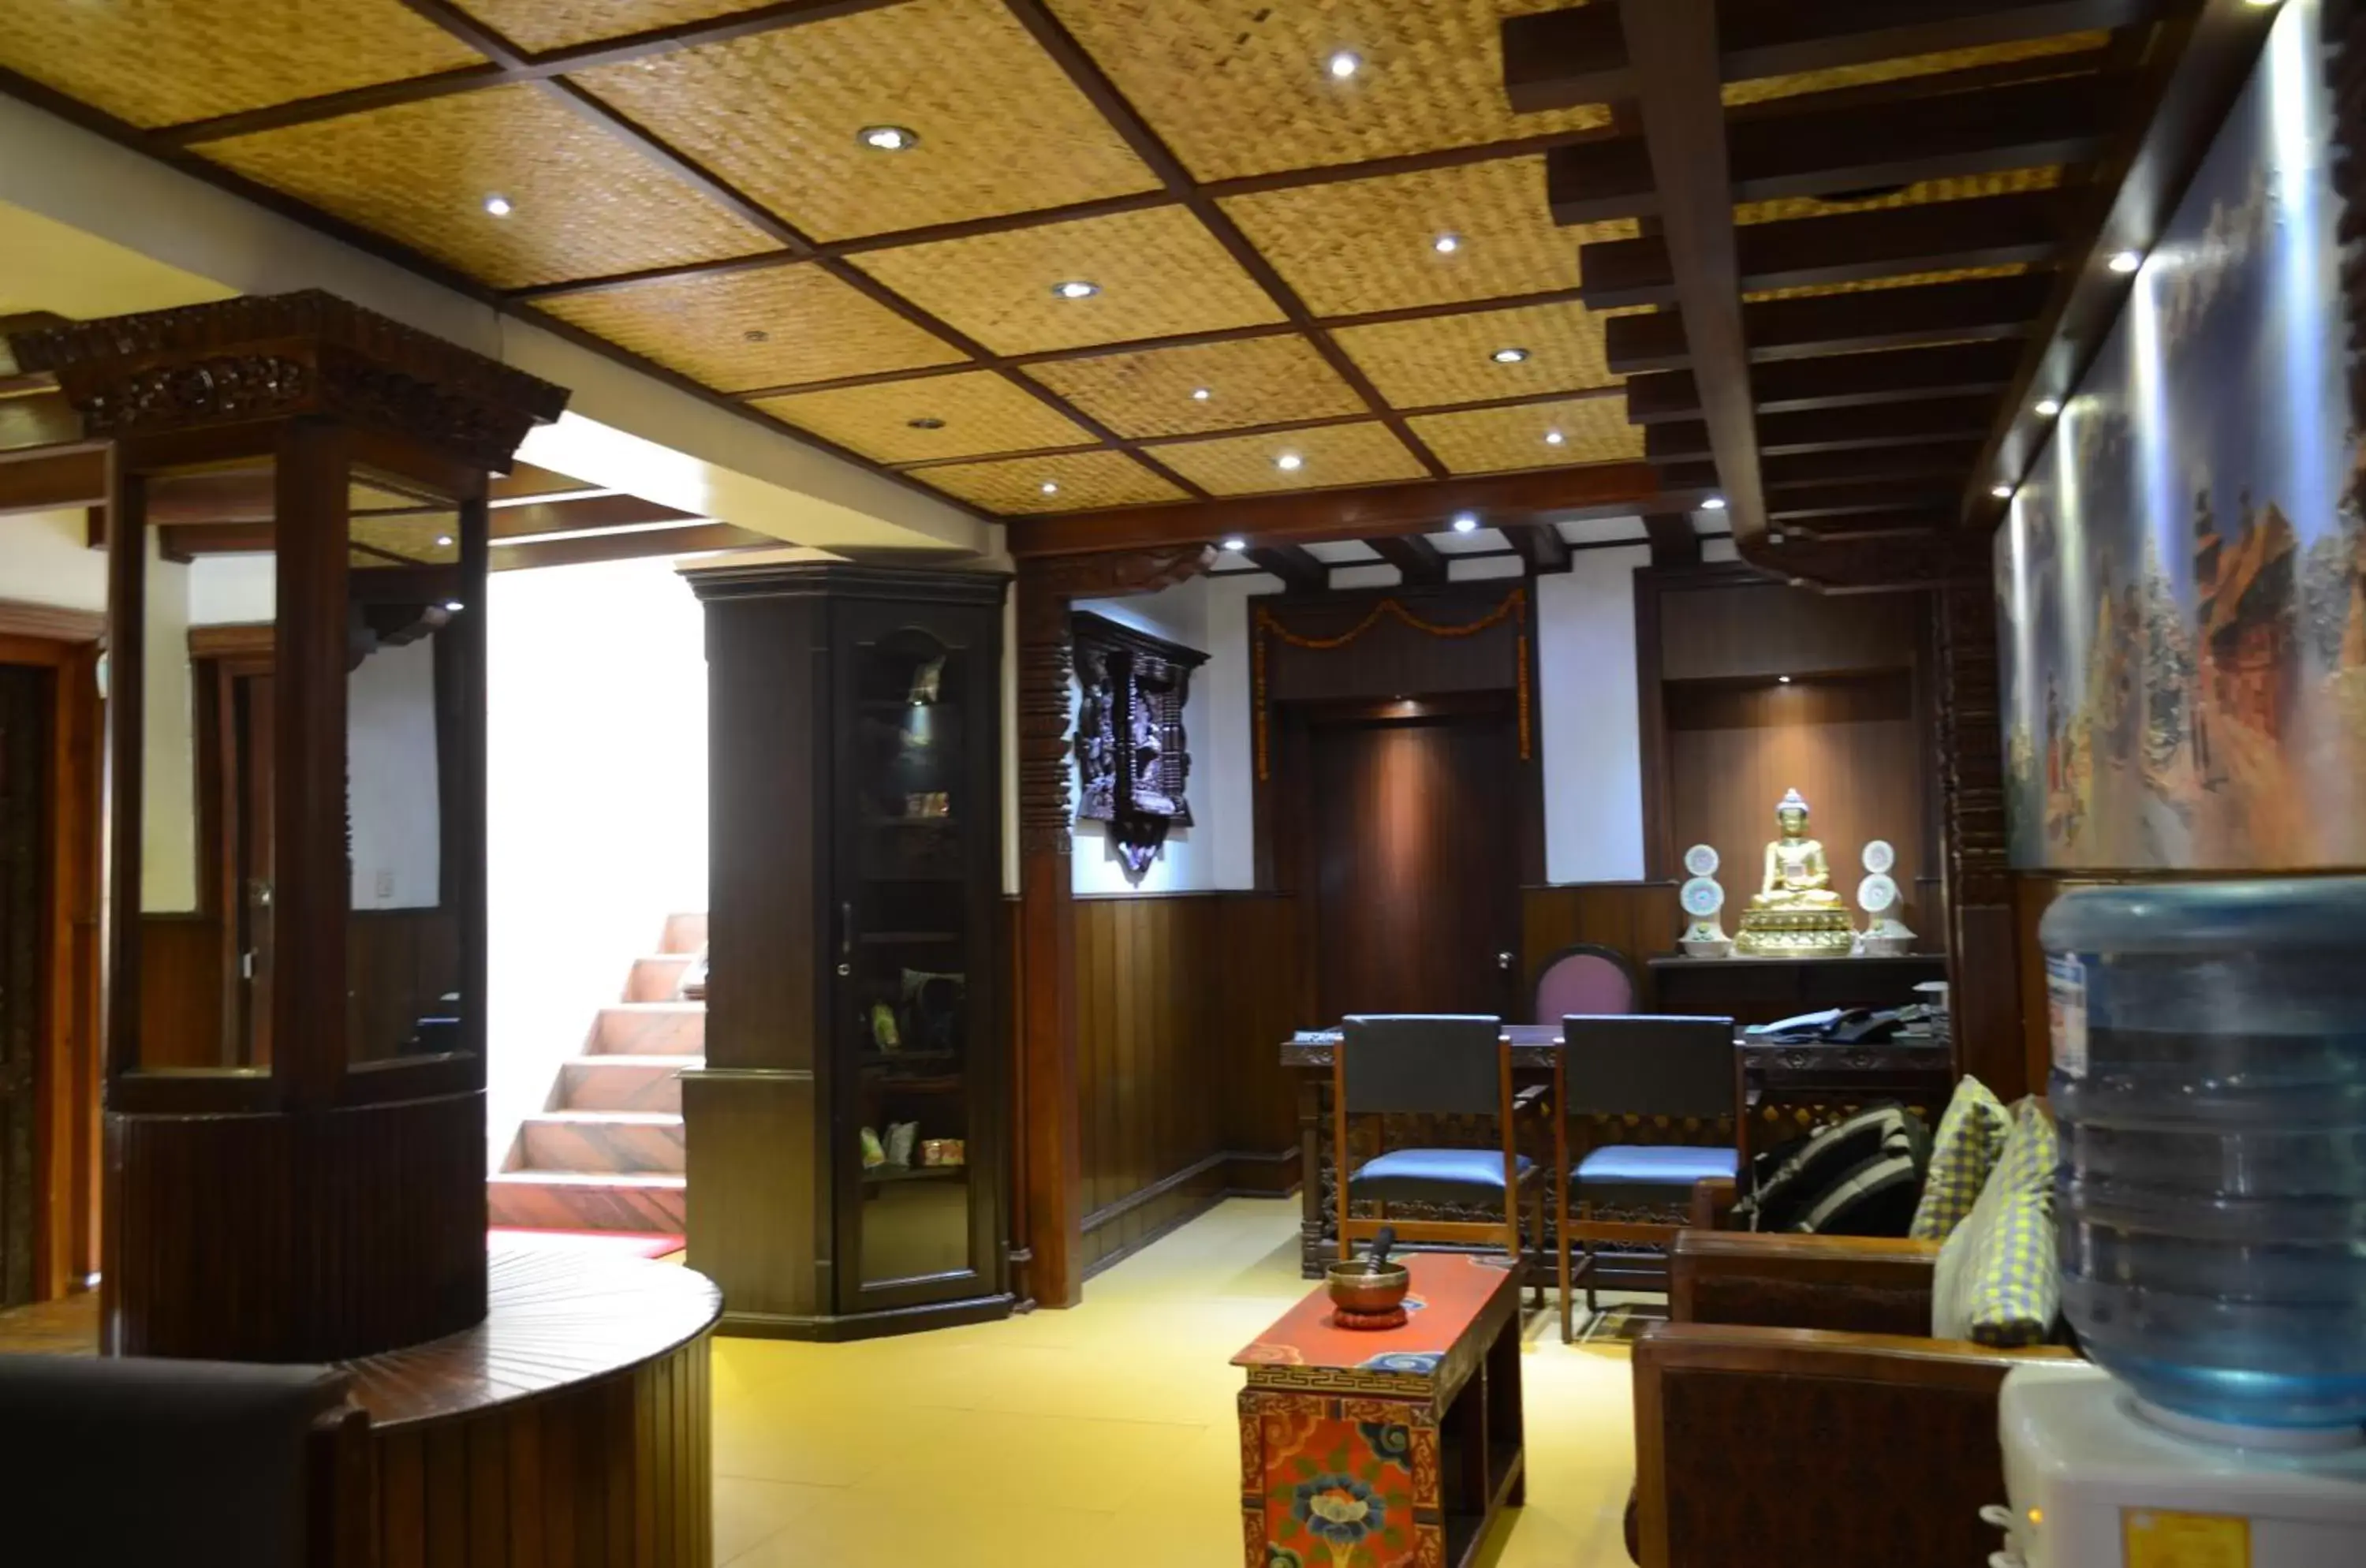 Lobby or reception, Lobby/Reception in Hotel Ganesh Himal